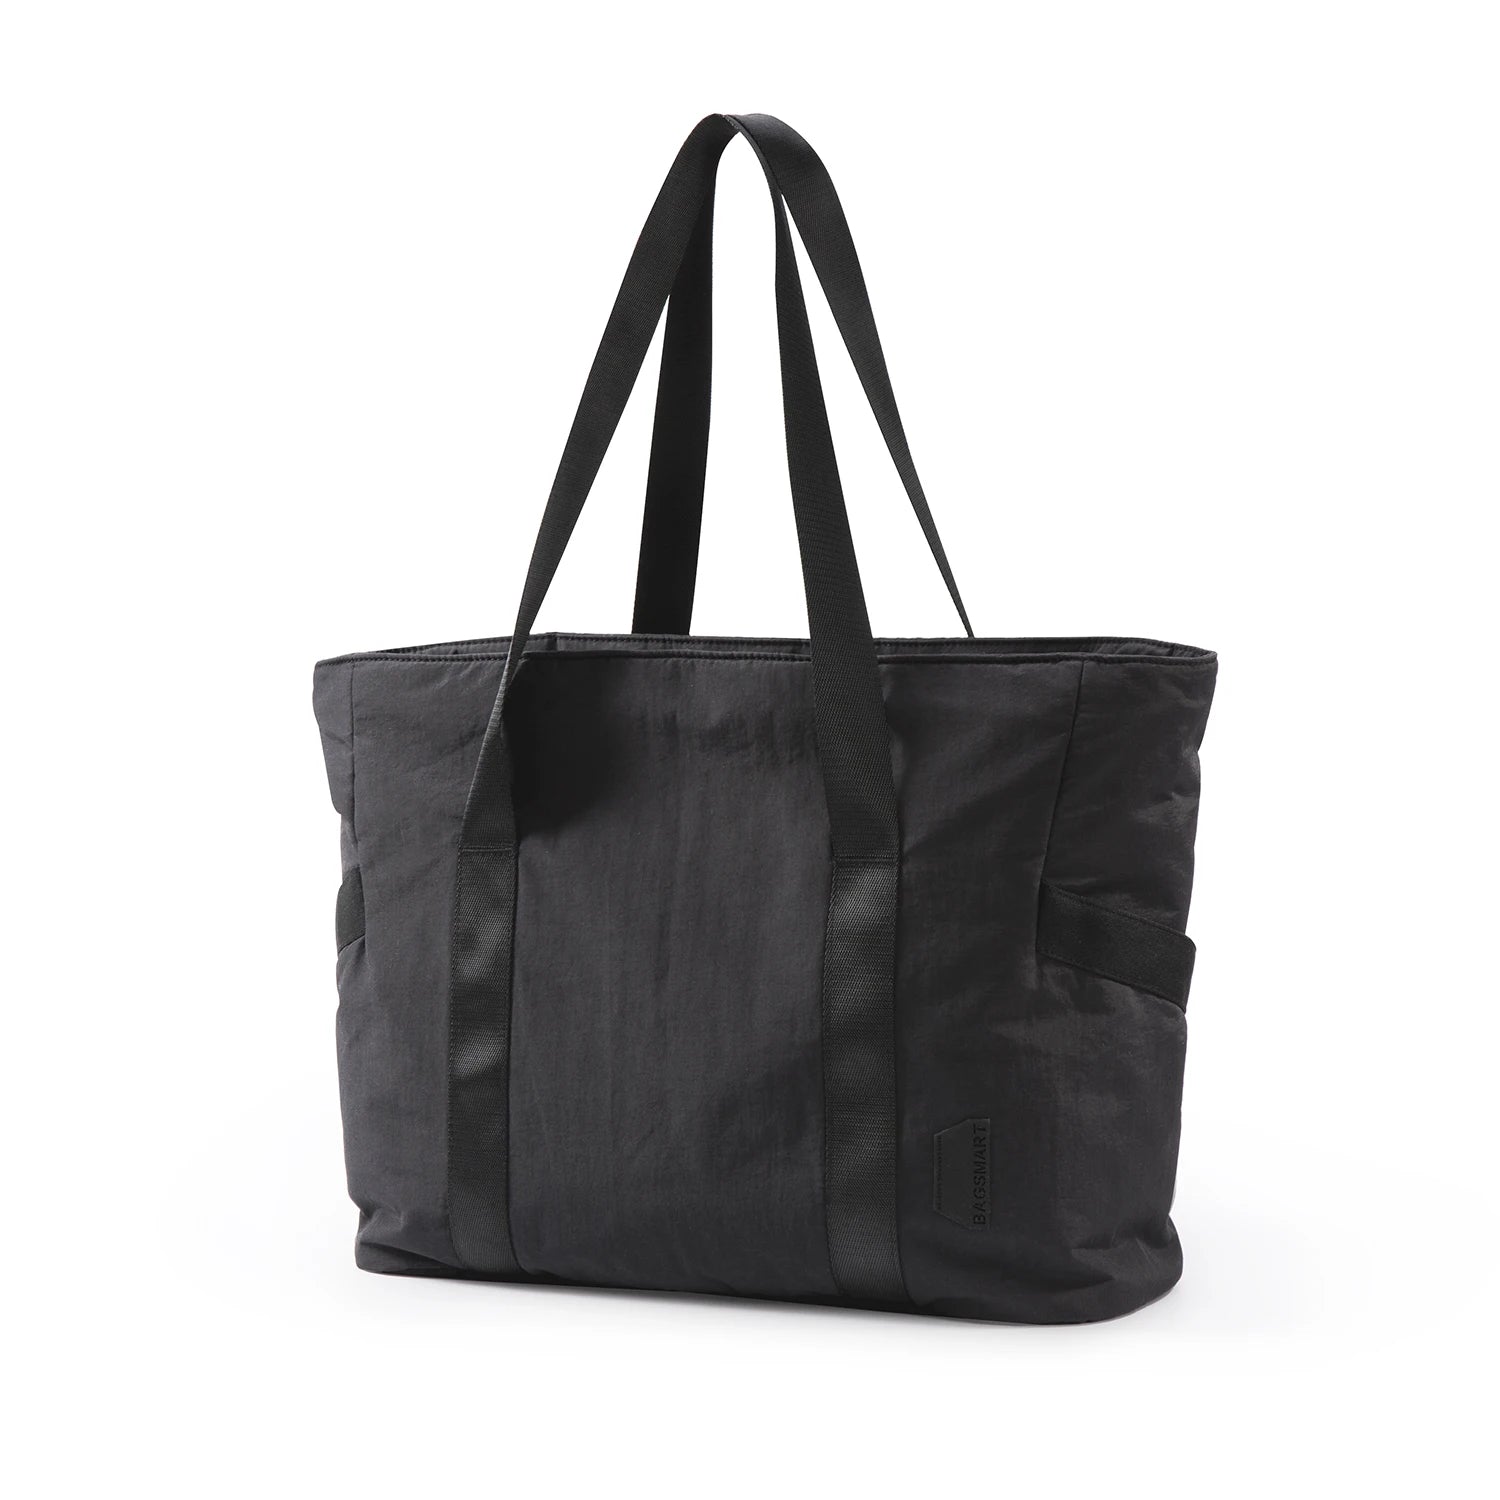 Large Capacity Women's Tote Bag Black L